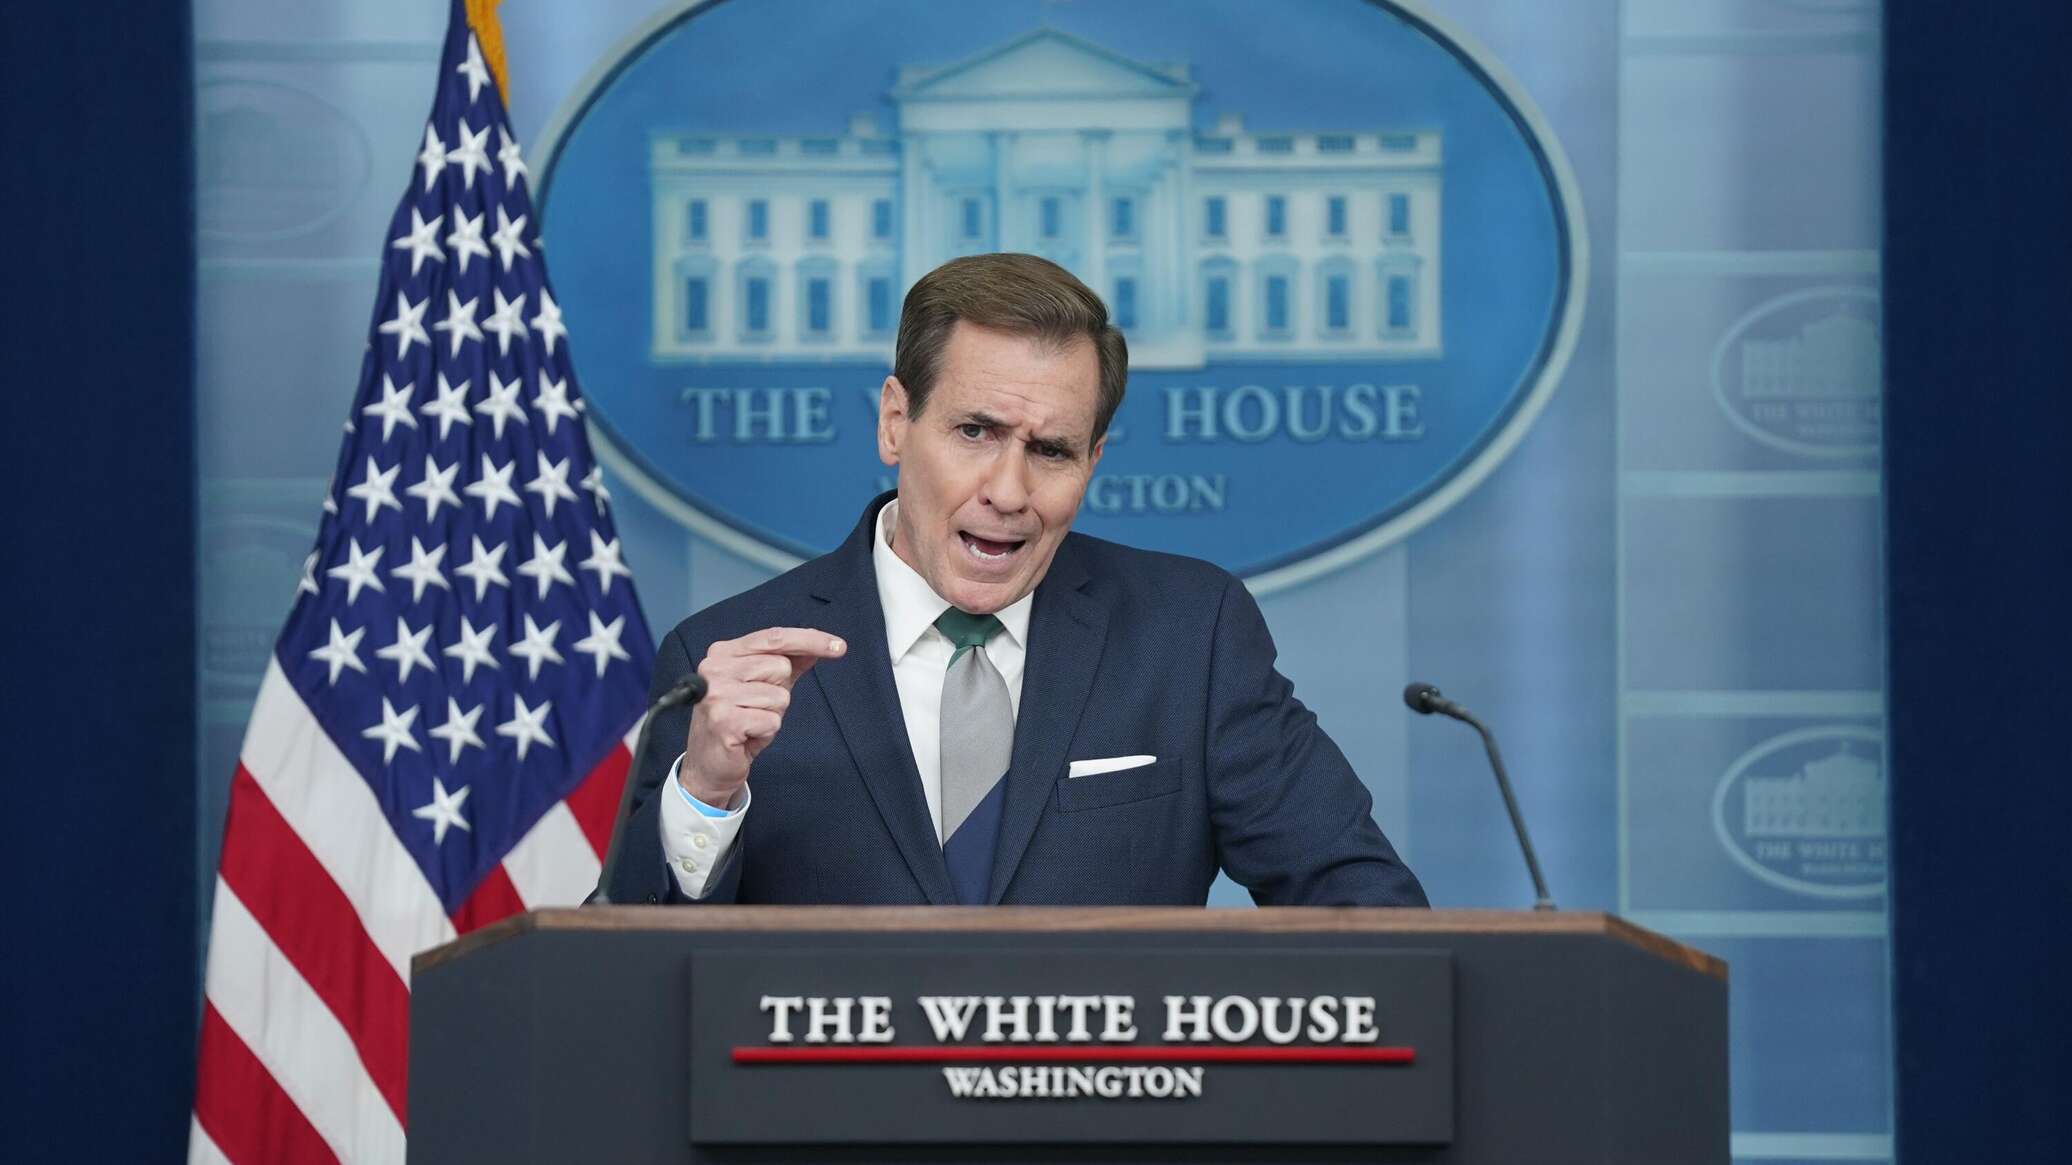 البيت الأبيض يكشف تفاصيل الضربات الأمريكية على سوريا والعراق